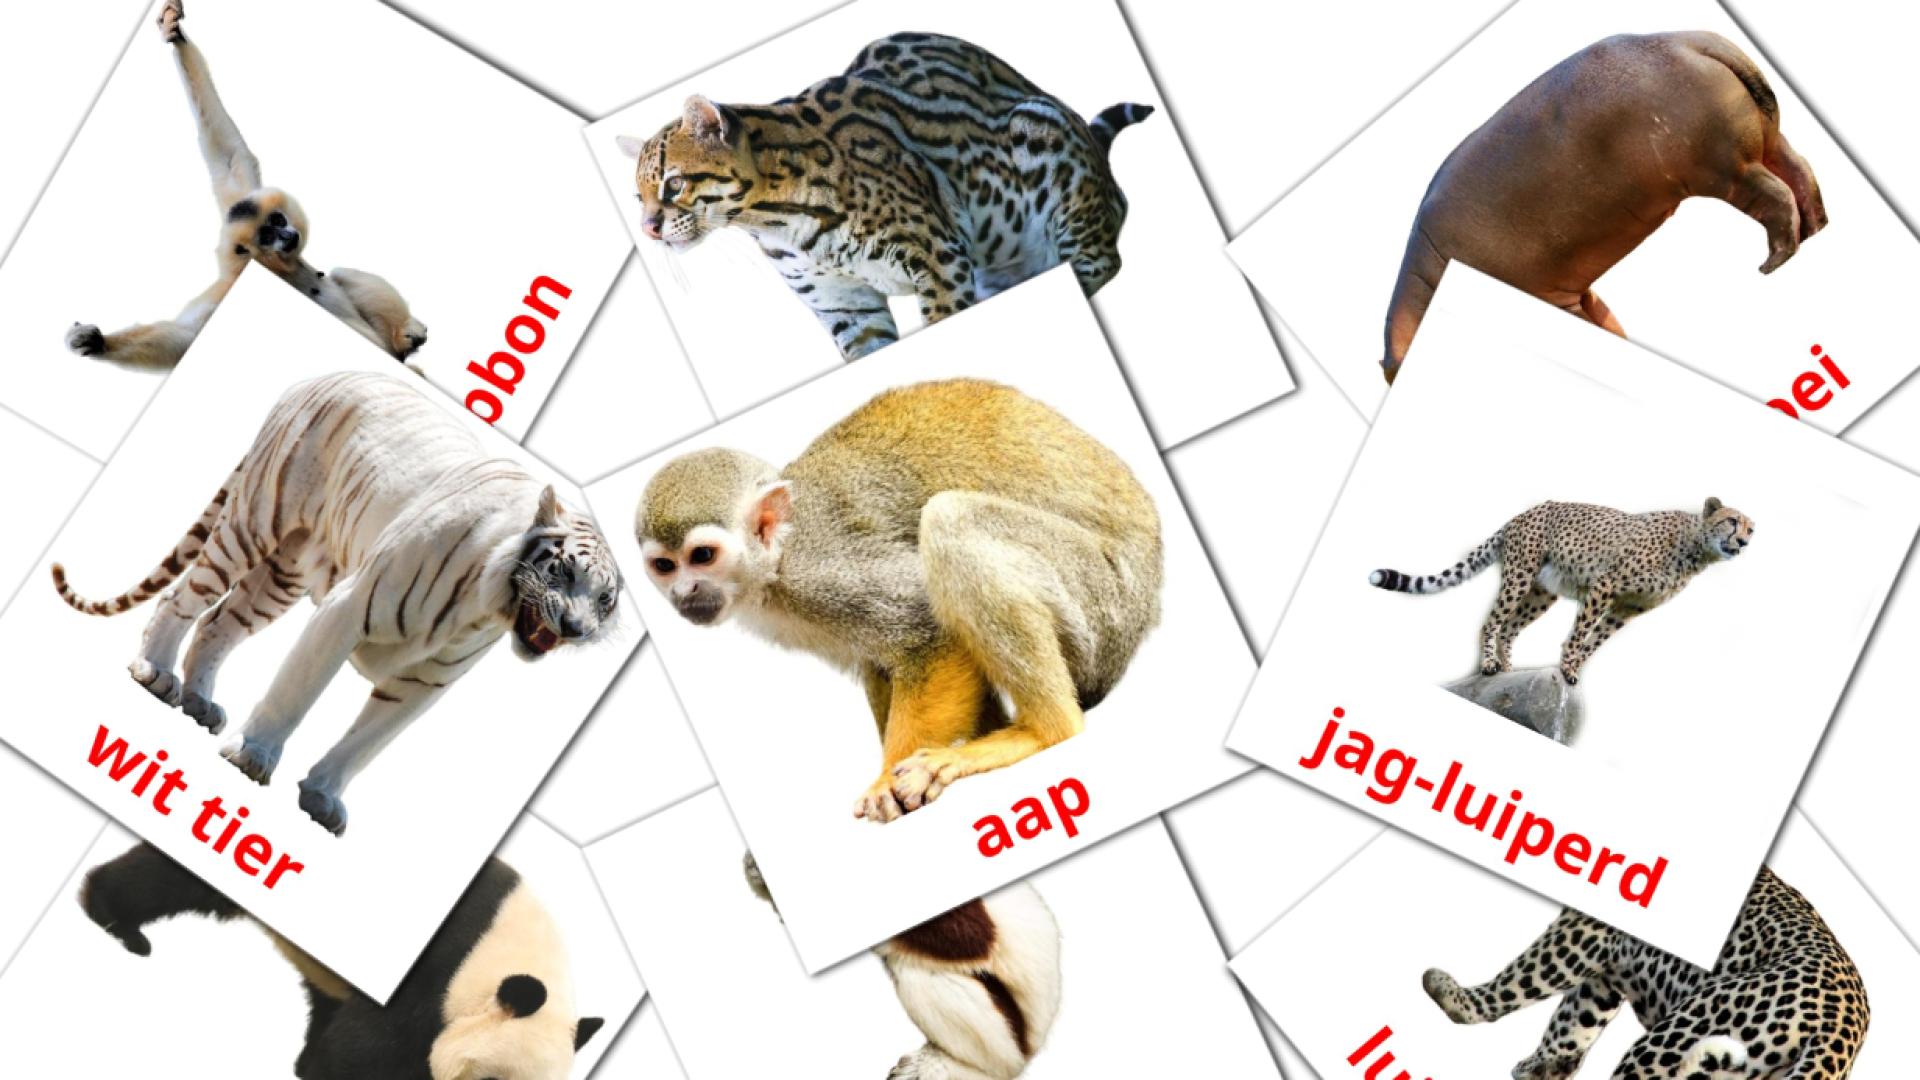 Dschungel Tiere - Afrikaans Vokabelkarten